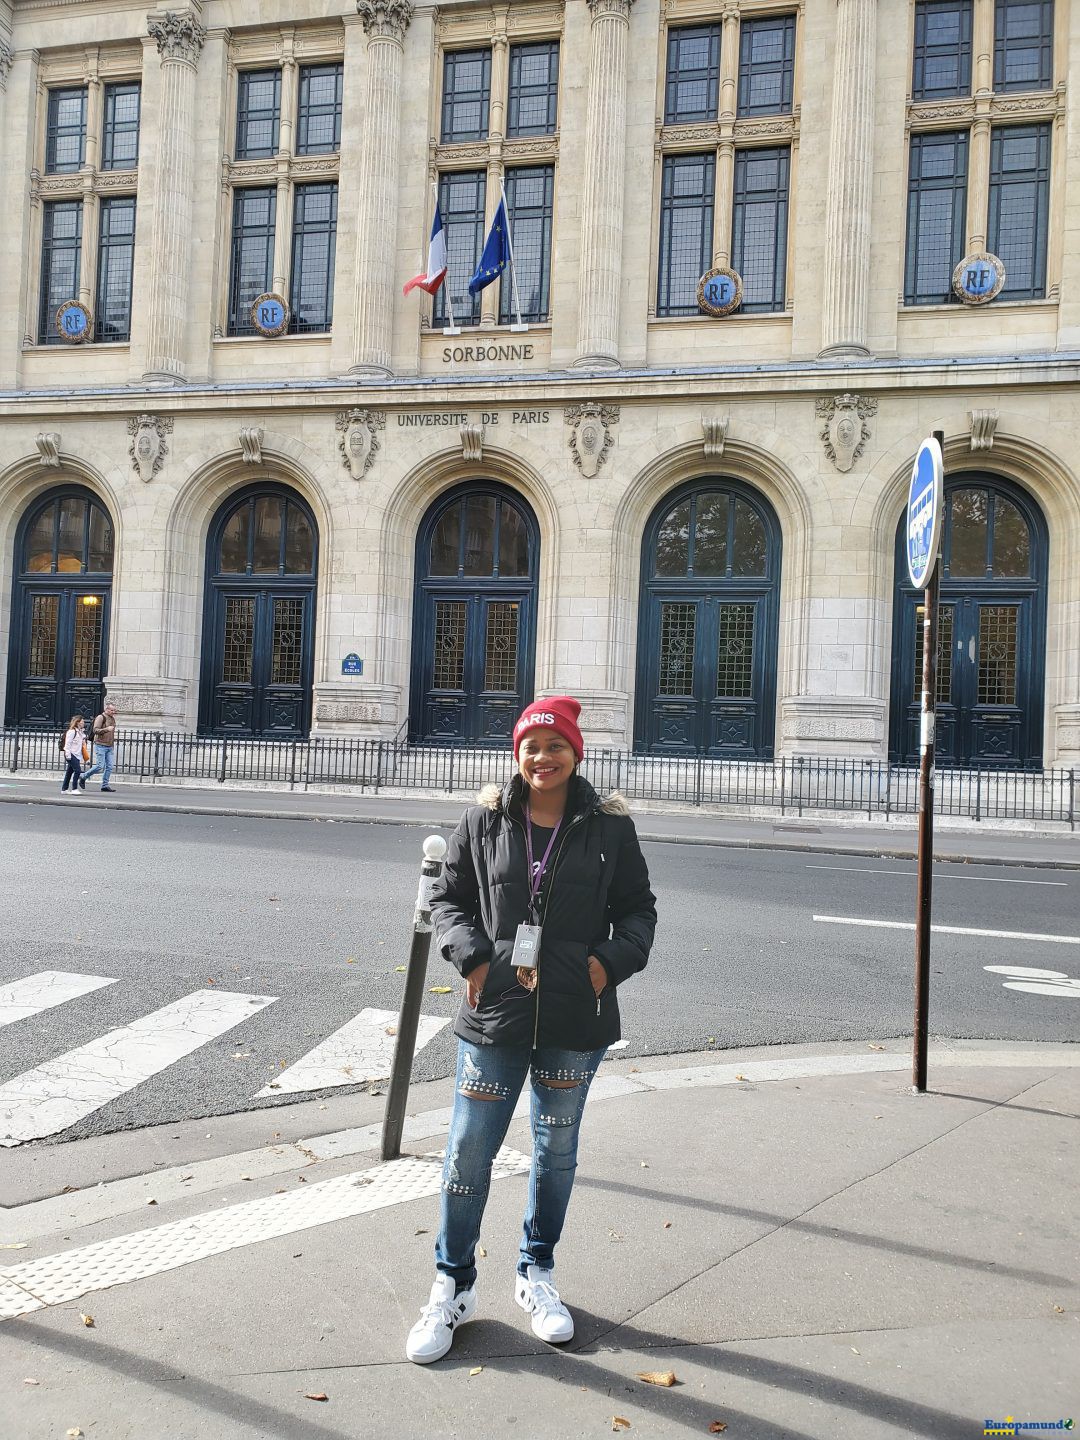 Universidad de paris